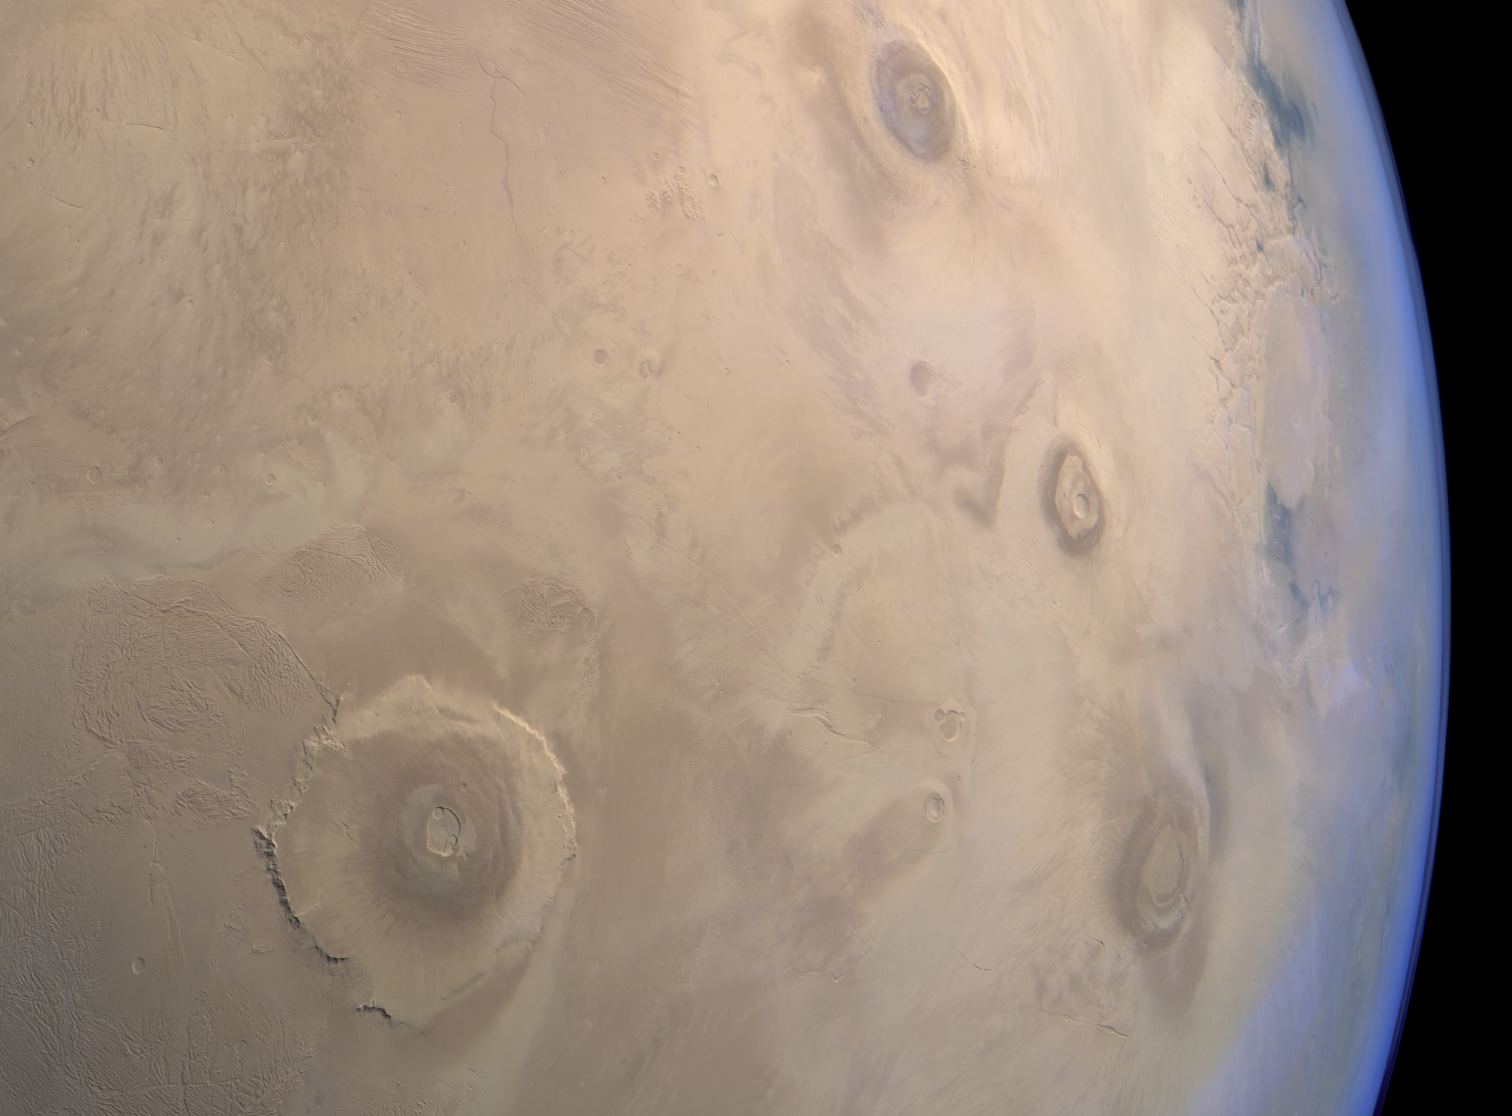 A Tharsis vulkáni régió az európai Mars Express űrszonda felvételén a 22 kilométer magas Olympus Mons-al (balra), a 15 kilométer magas Ascraeus Mons-al (jobbra fent), a 8,7 kilométer magas Pavonis Mons-al (jobbra középen) és a 11,7 kilométer magas Arsia Mons-al (jobbra lent)